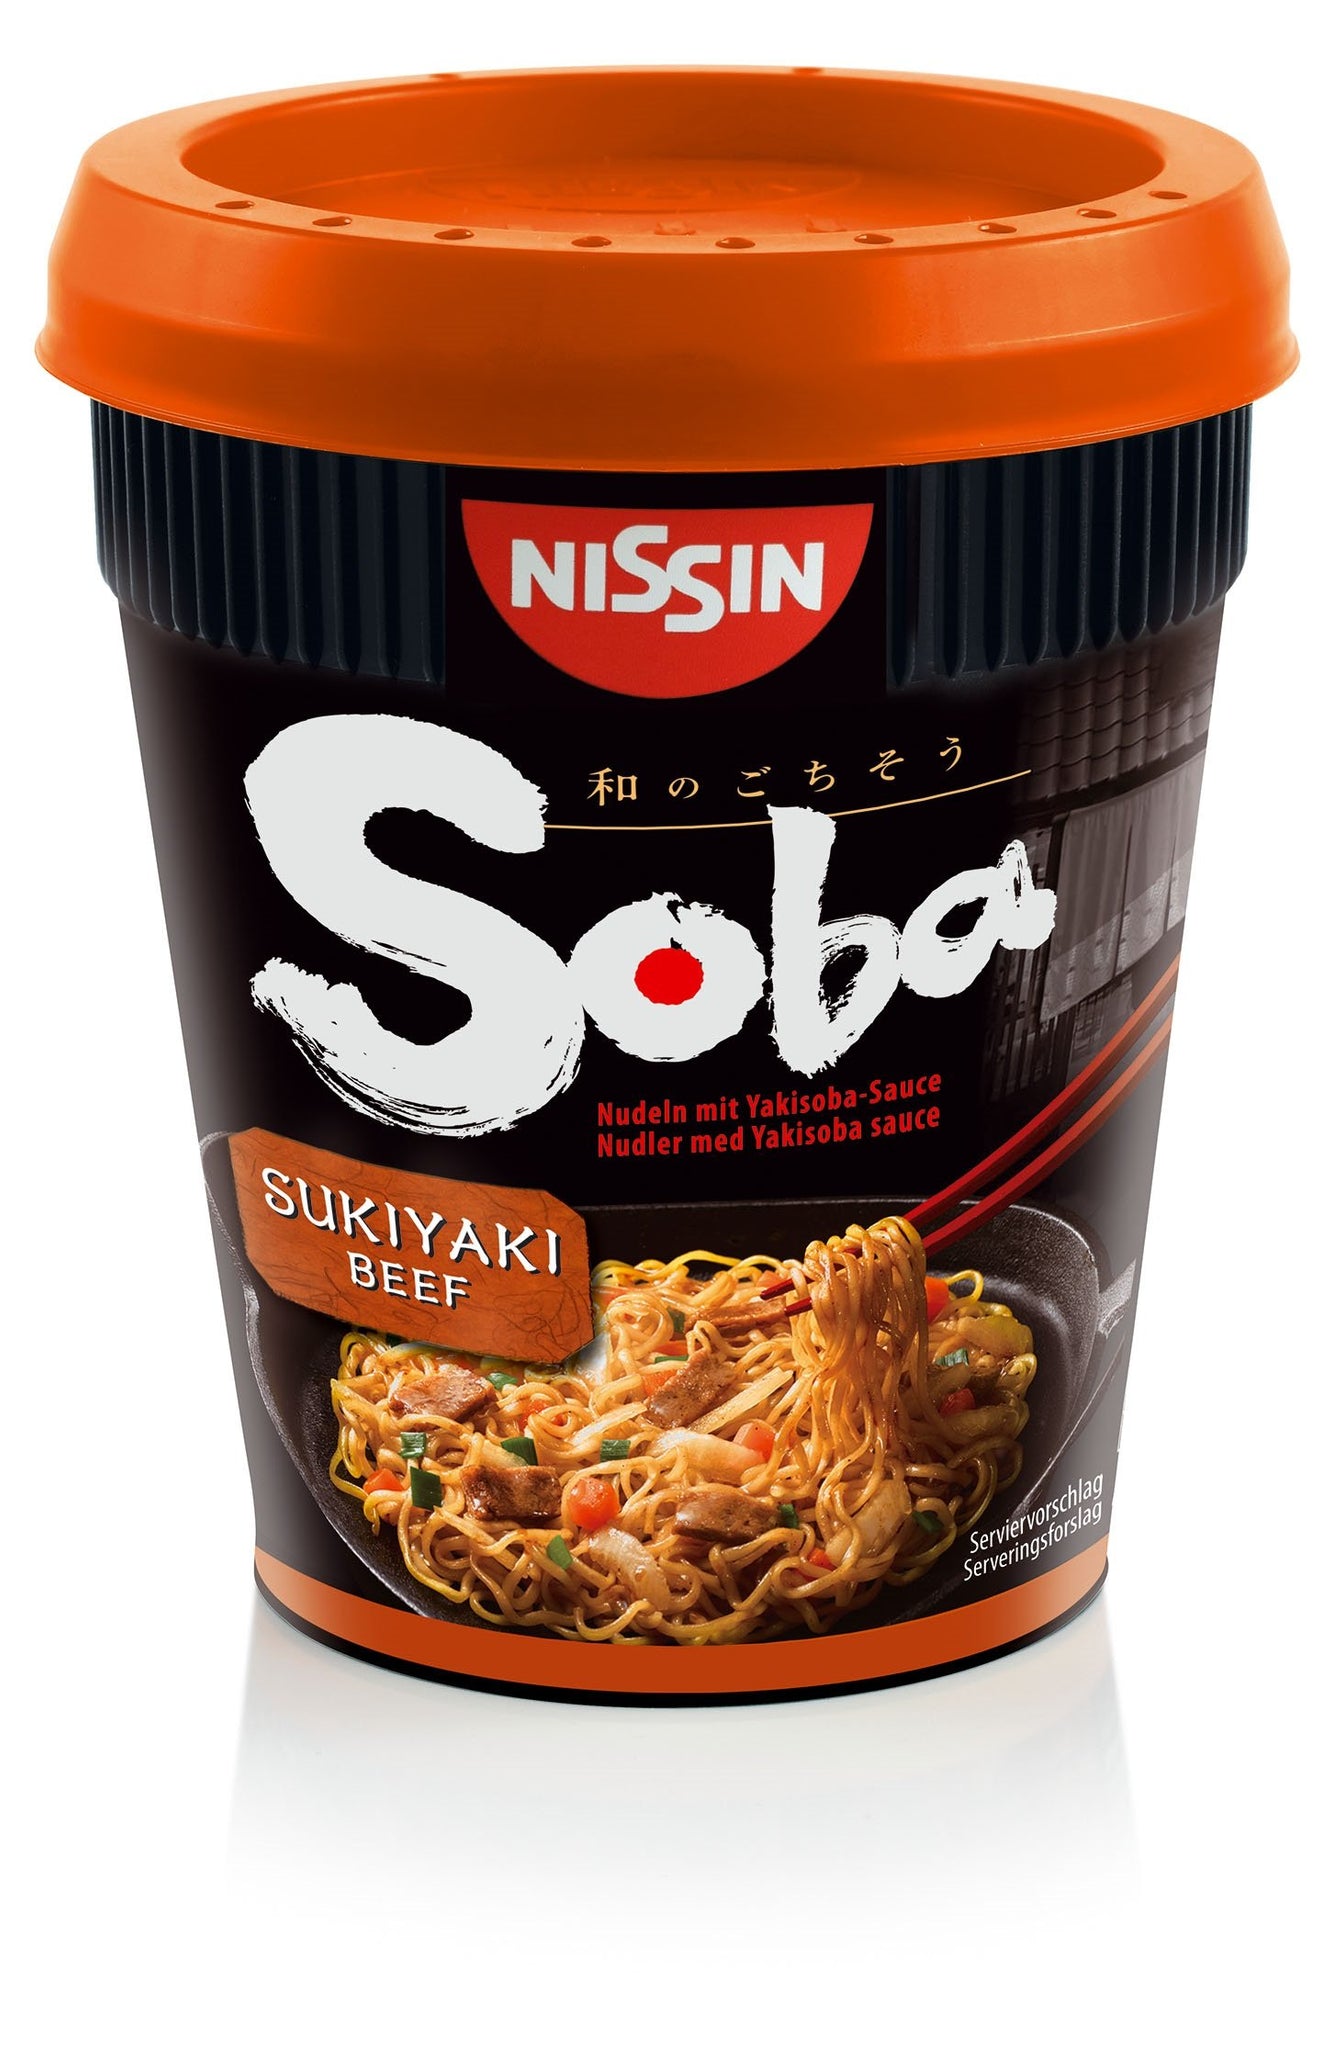 Ns-cup-sukiyaki-biff- 8x89 gr